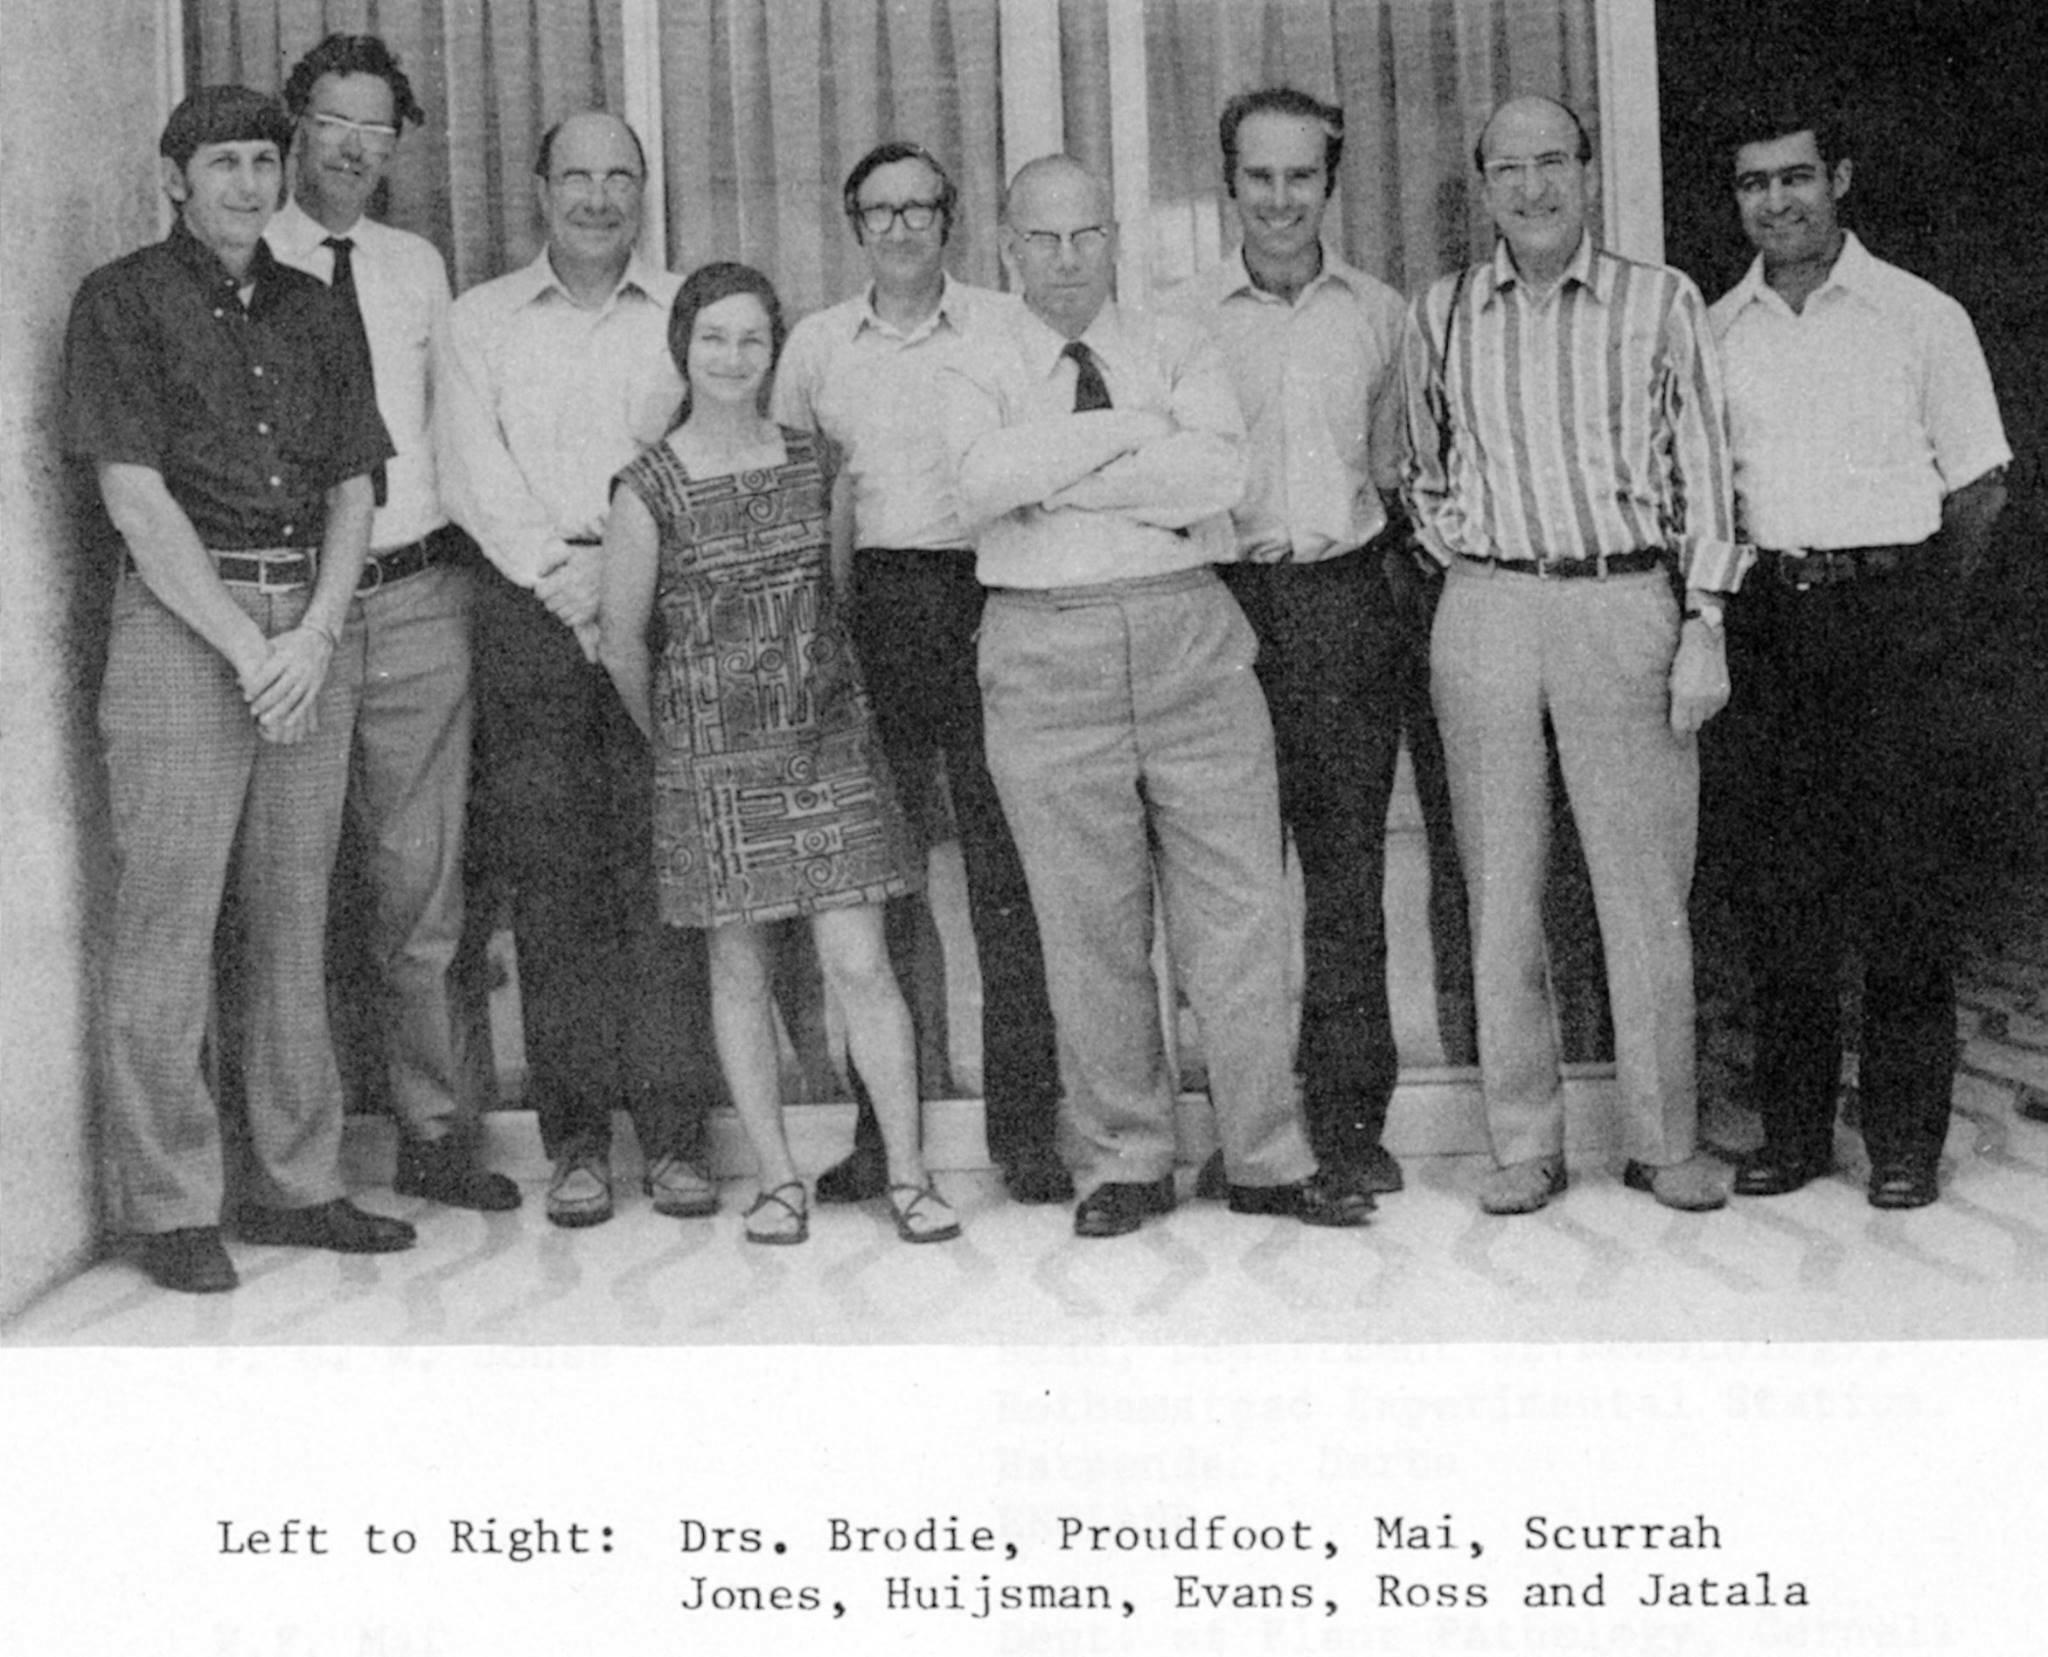 Schwarzweissfoto aus dem Jahre 1976. Gruppenbild von acht weissen Männern verschiedensten Alters. In der ersten Reihe eine junge, kleine, zierliche Frau.